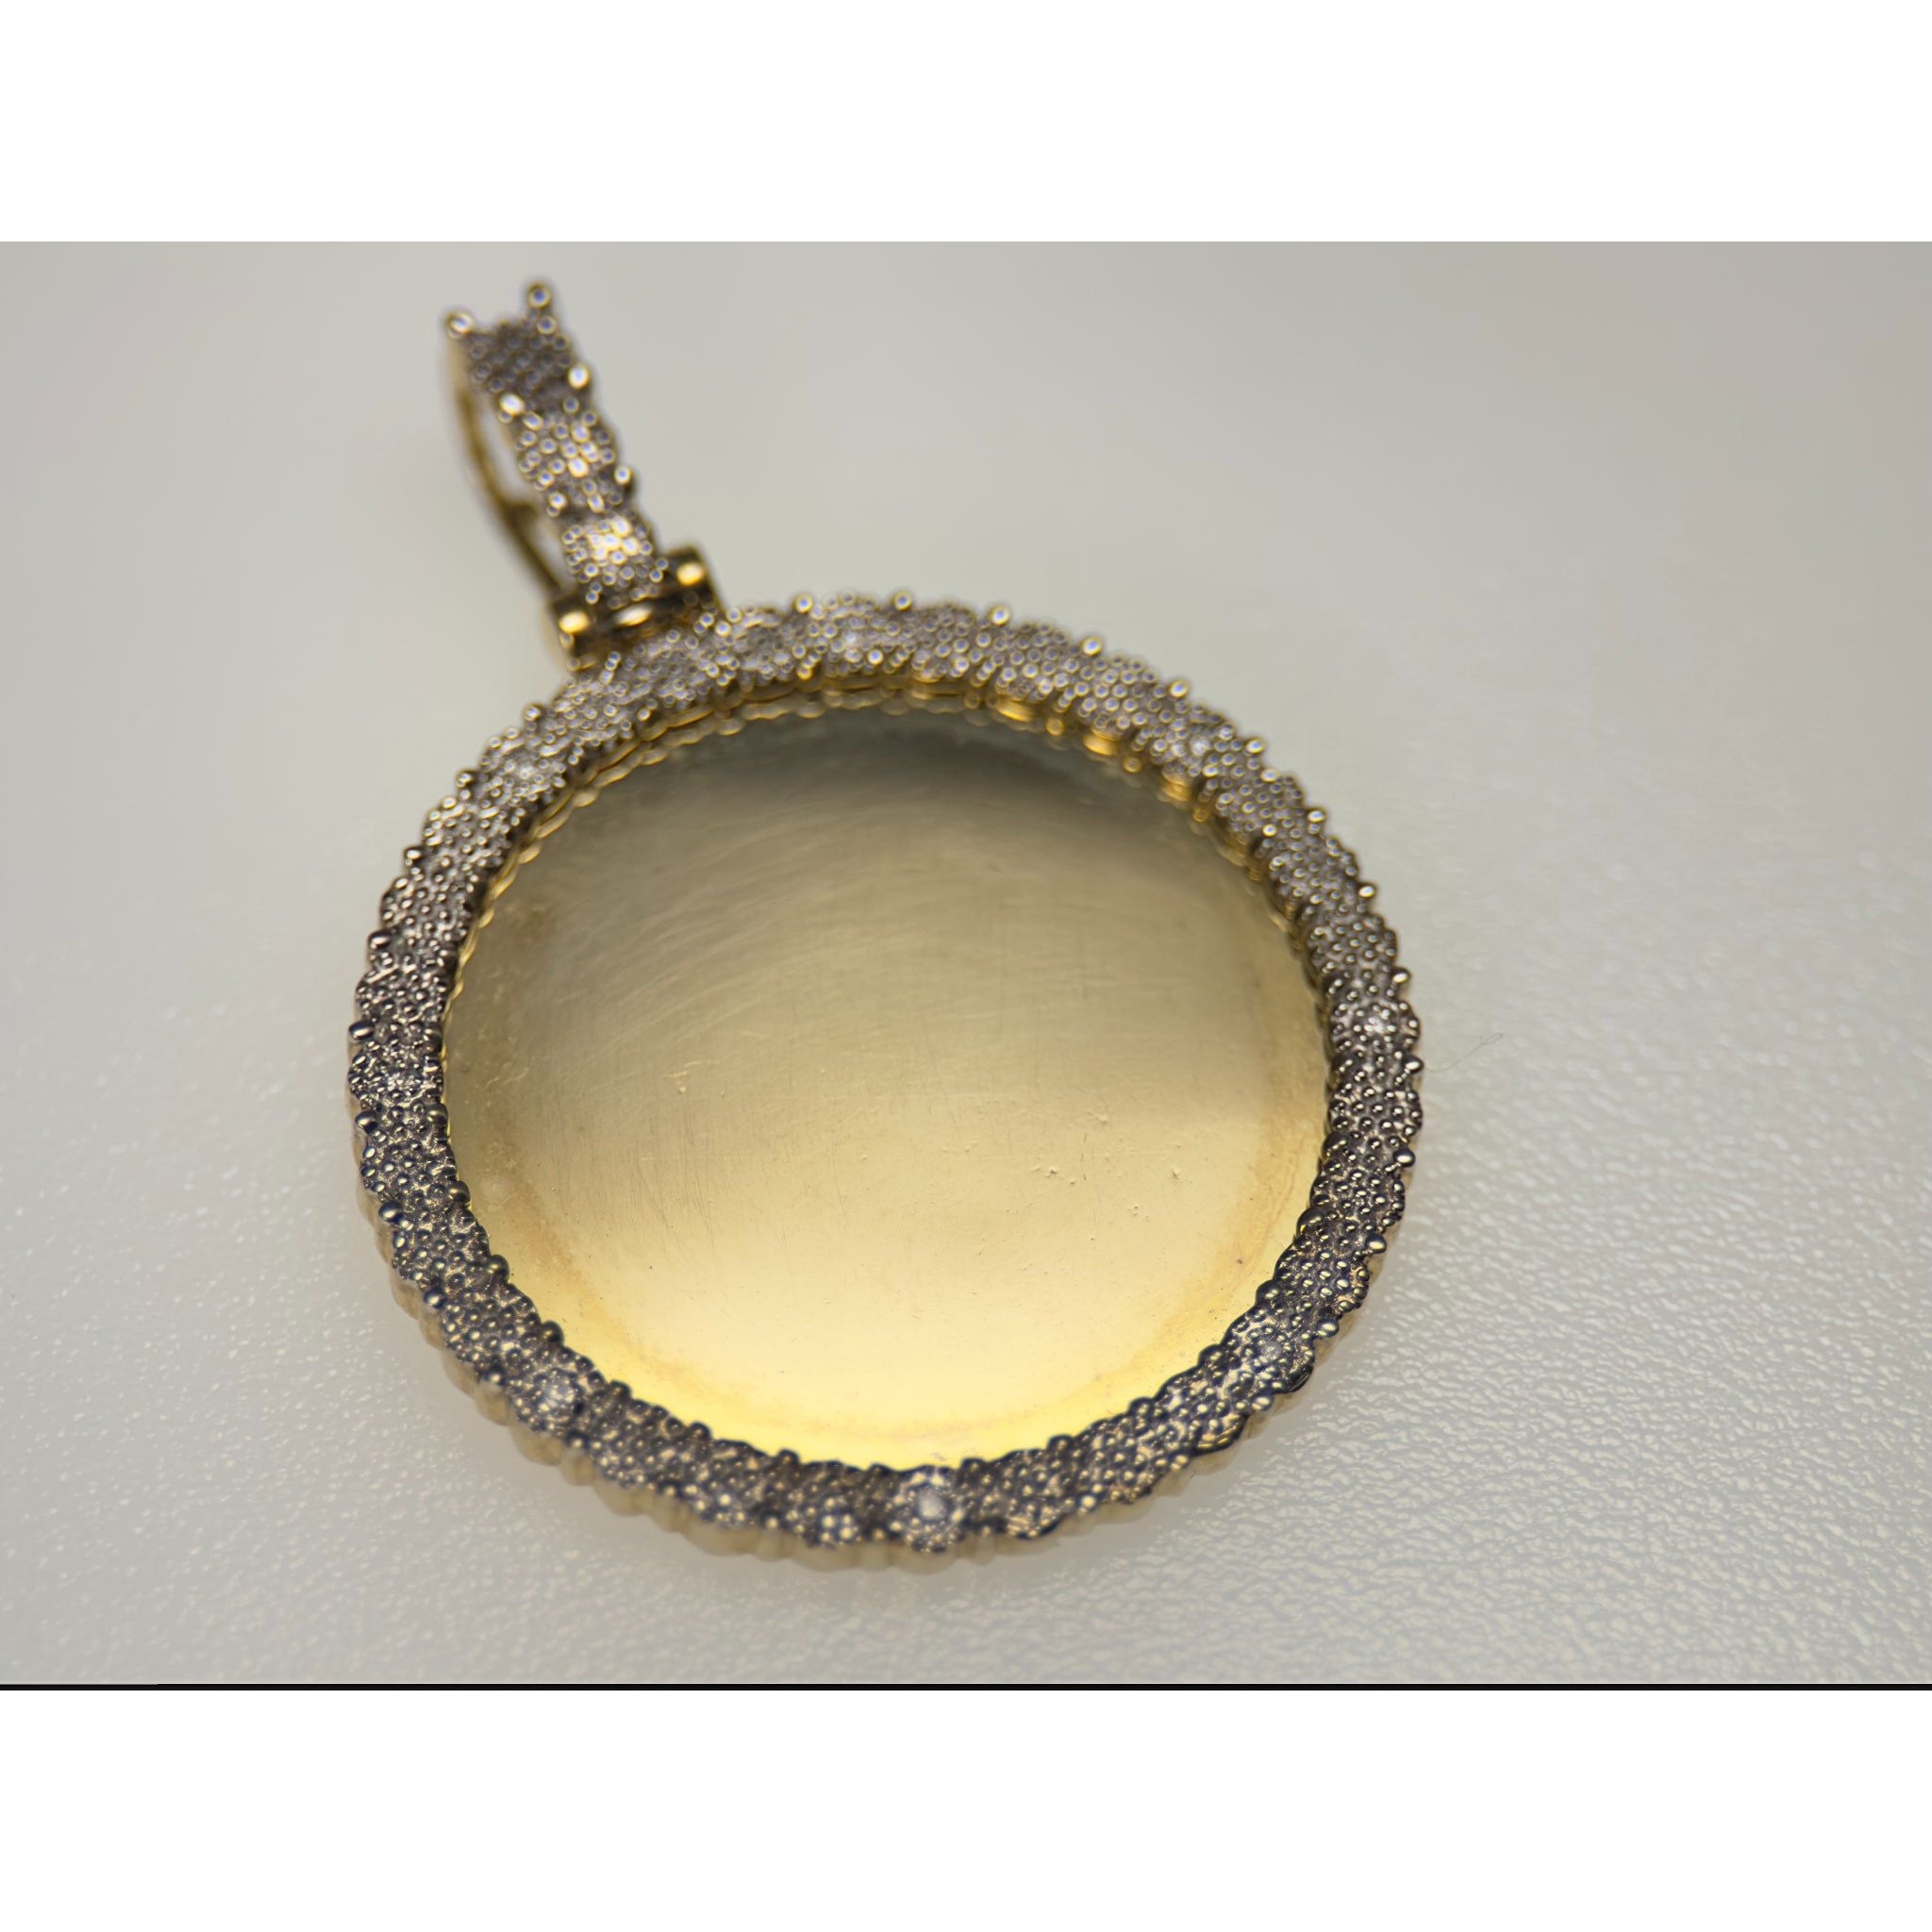 DR1386 - Oro amarillo de 10 quilates - Diamante - Colgante de diamantes - Colgante con imagen